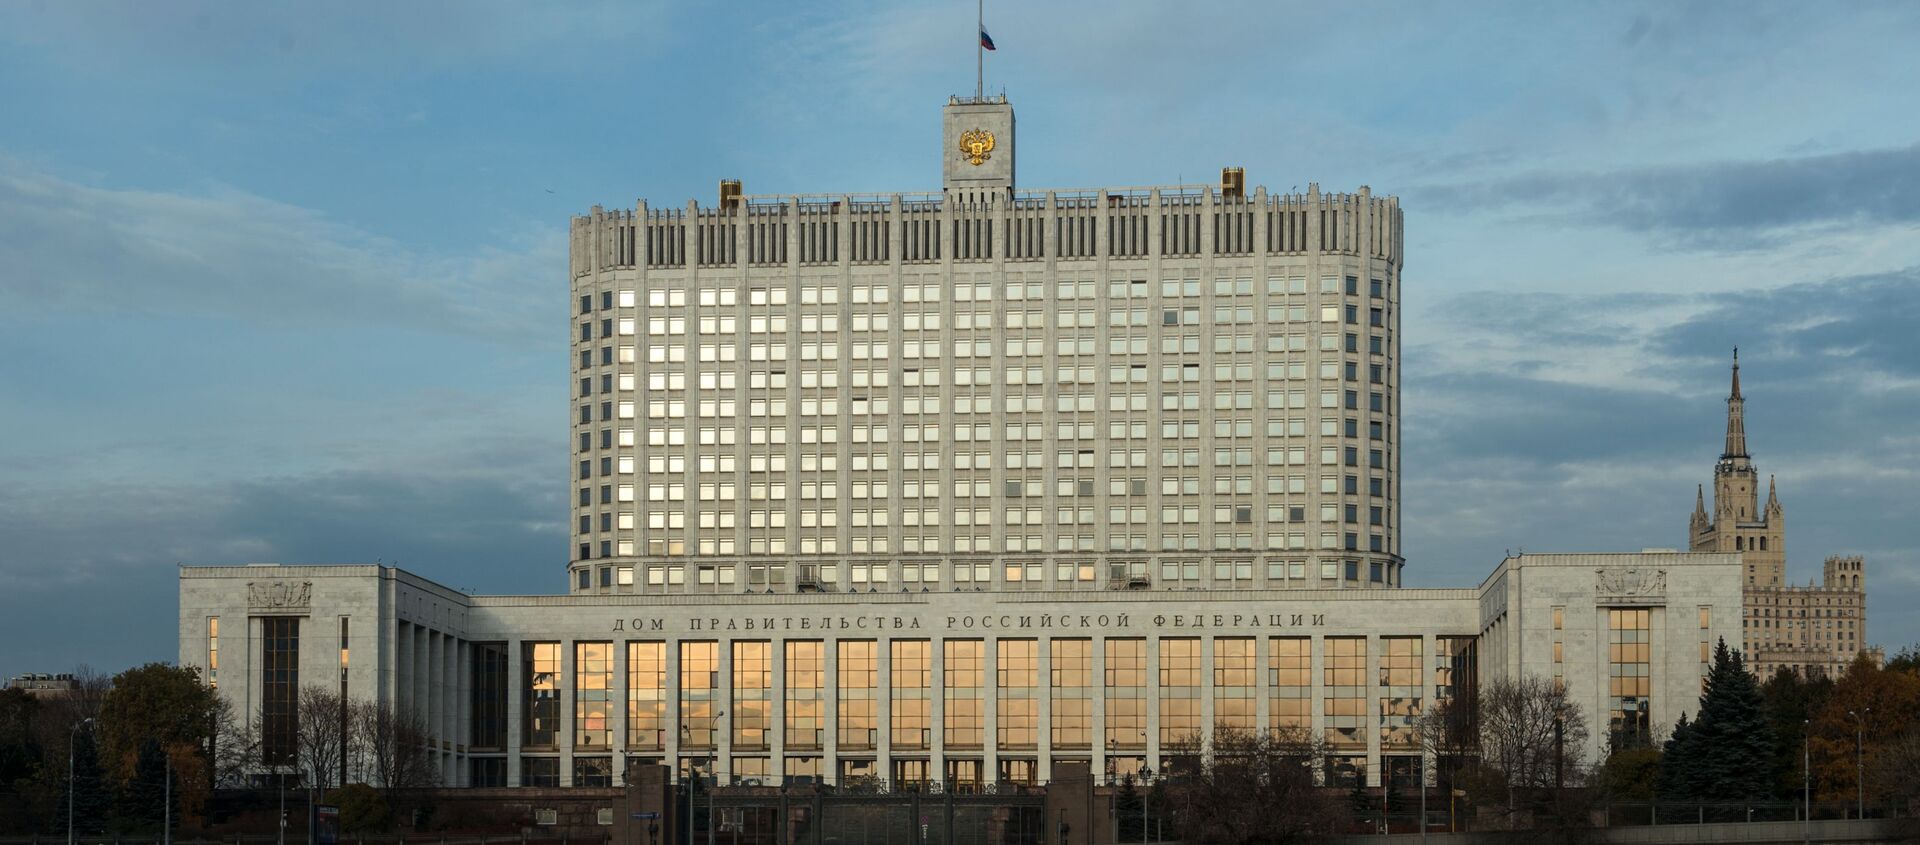 Quang cảnh tòa nhà Chính phủ Liên Bang Nga (Nhà Trắng), Moskva   - Sputnik Việt Nam, 1920, 14.05.2021